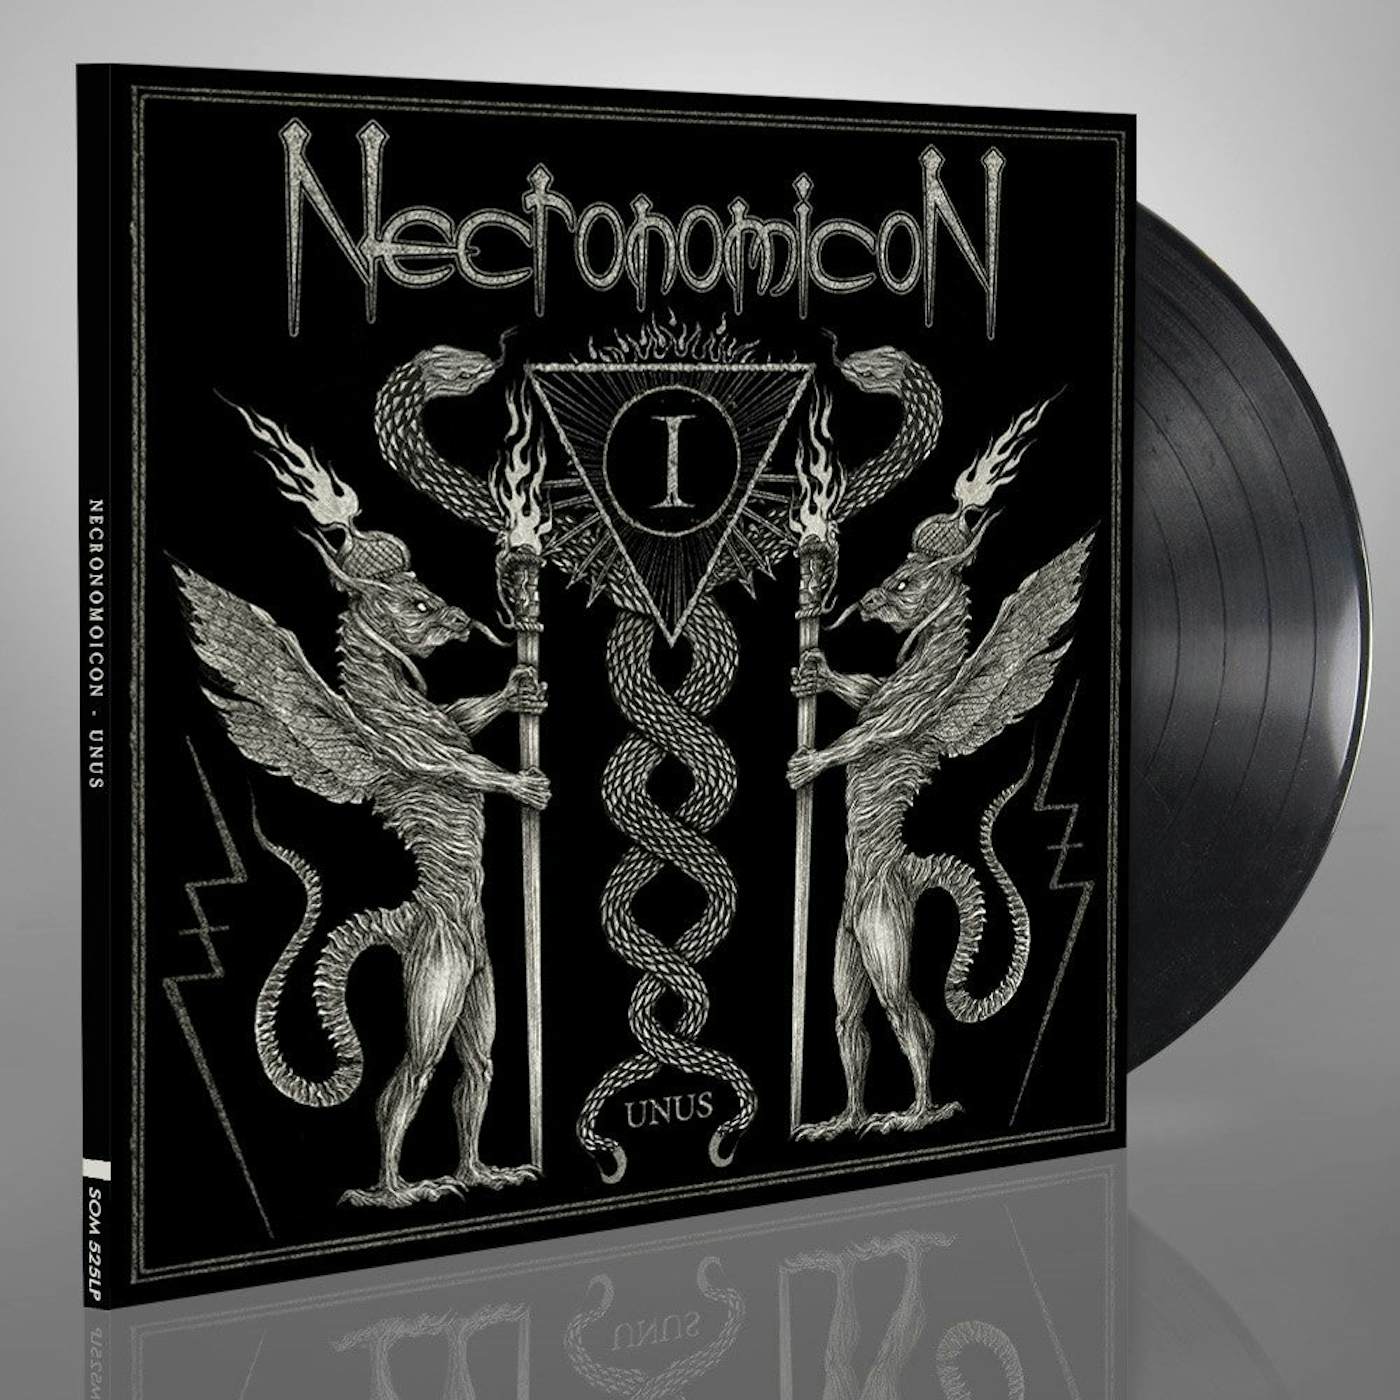 Necronomicon LP - Unus (Vinyl)